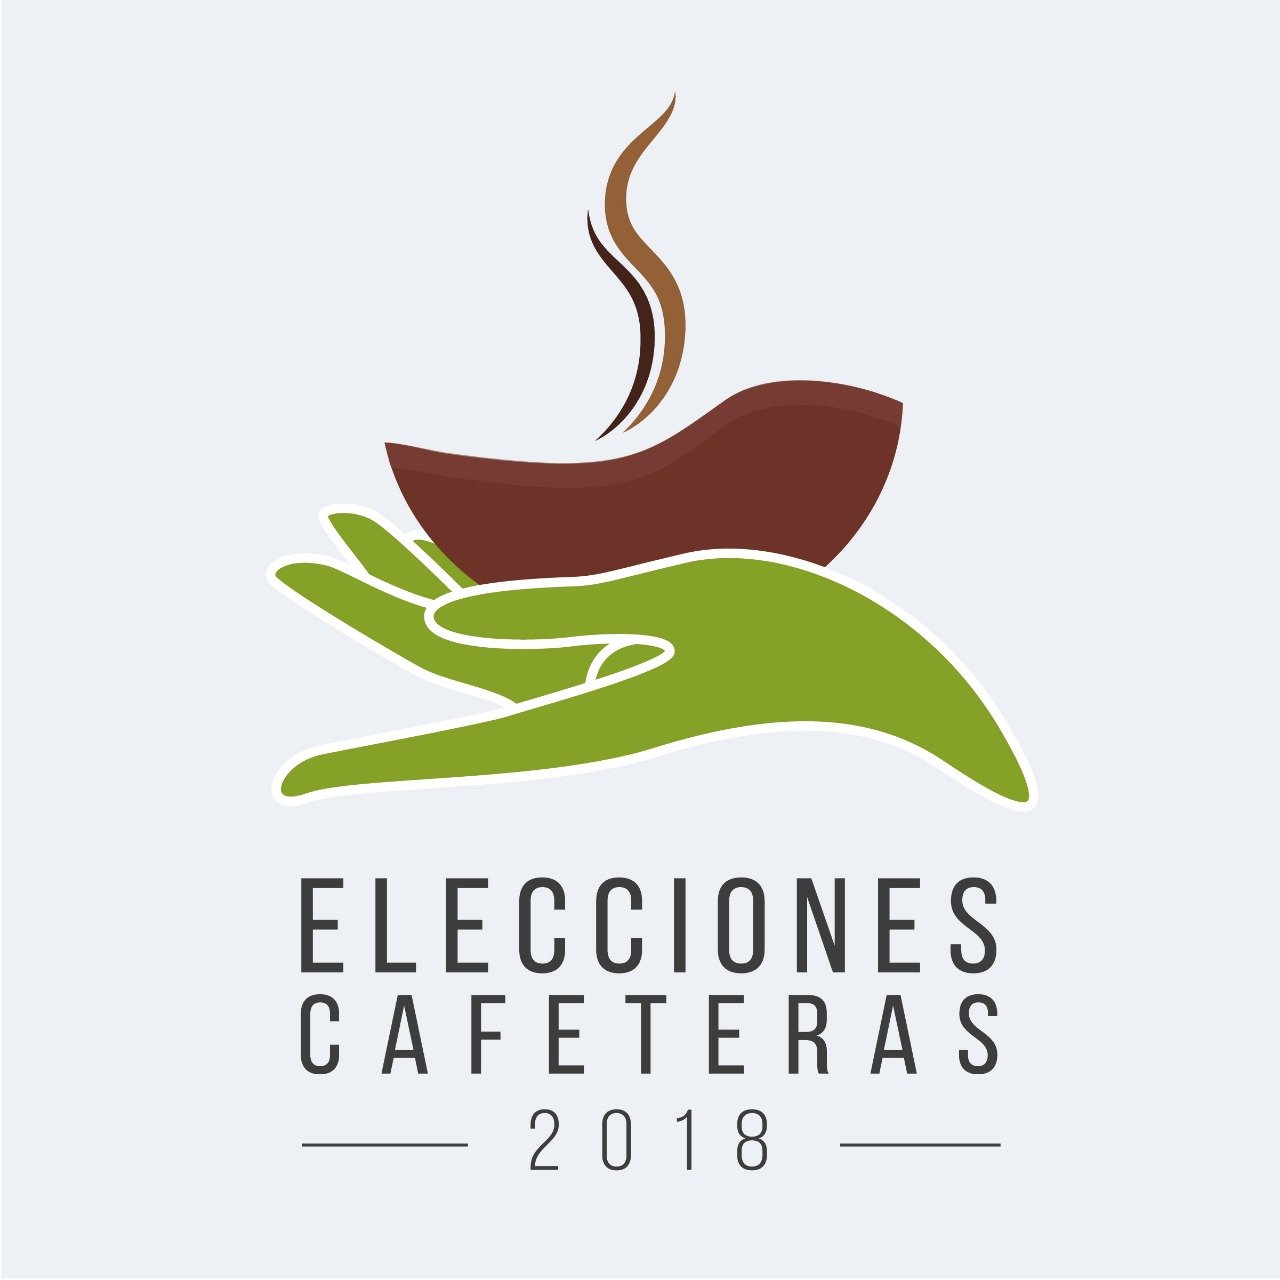 429 observadores de la MOE acompañarán elecciones cafeteras